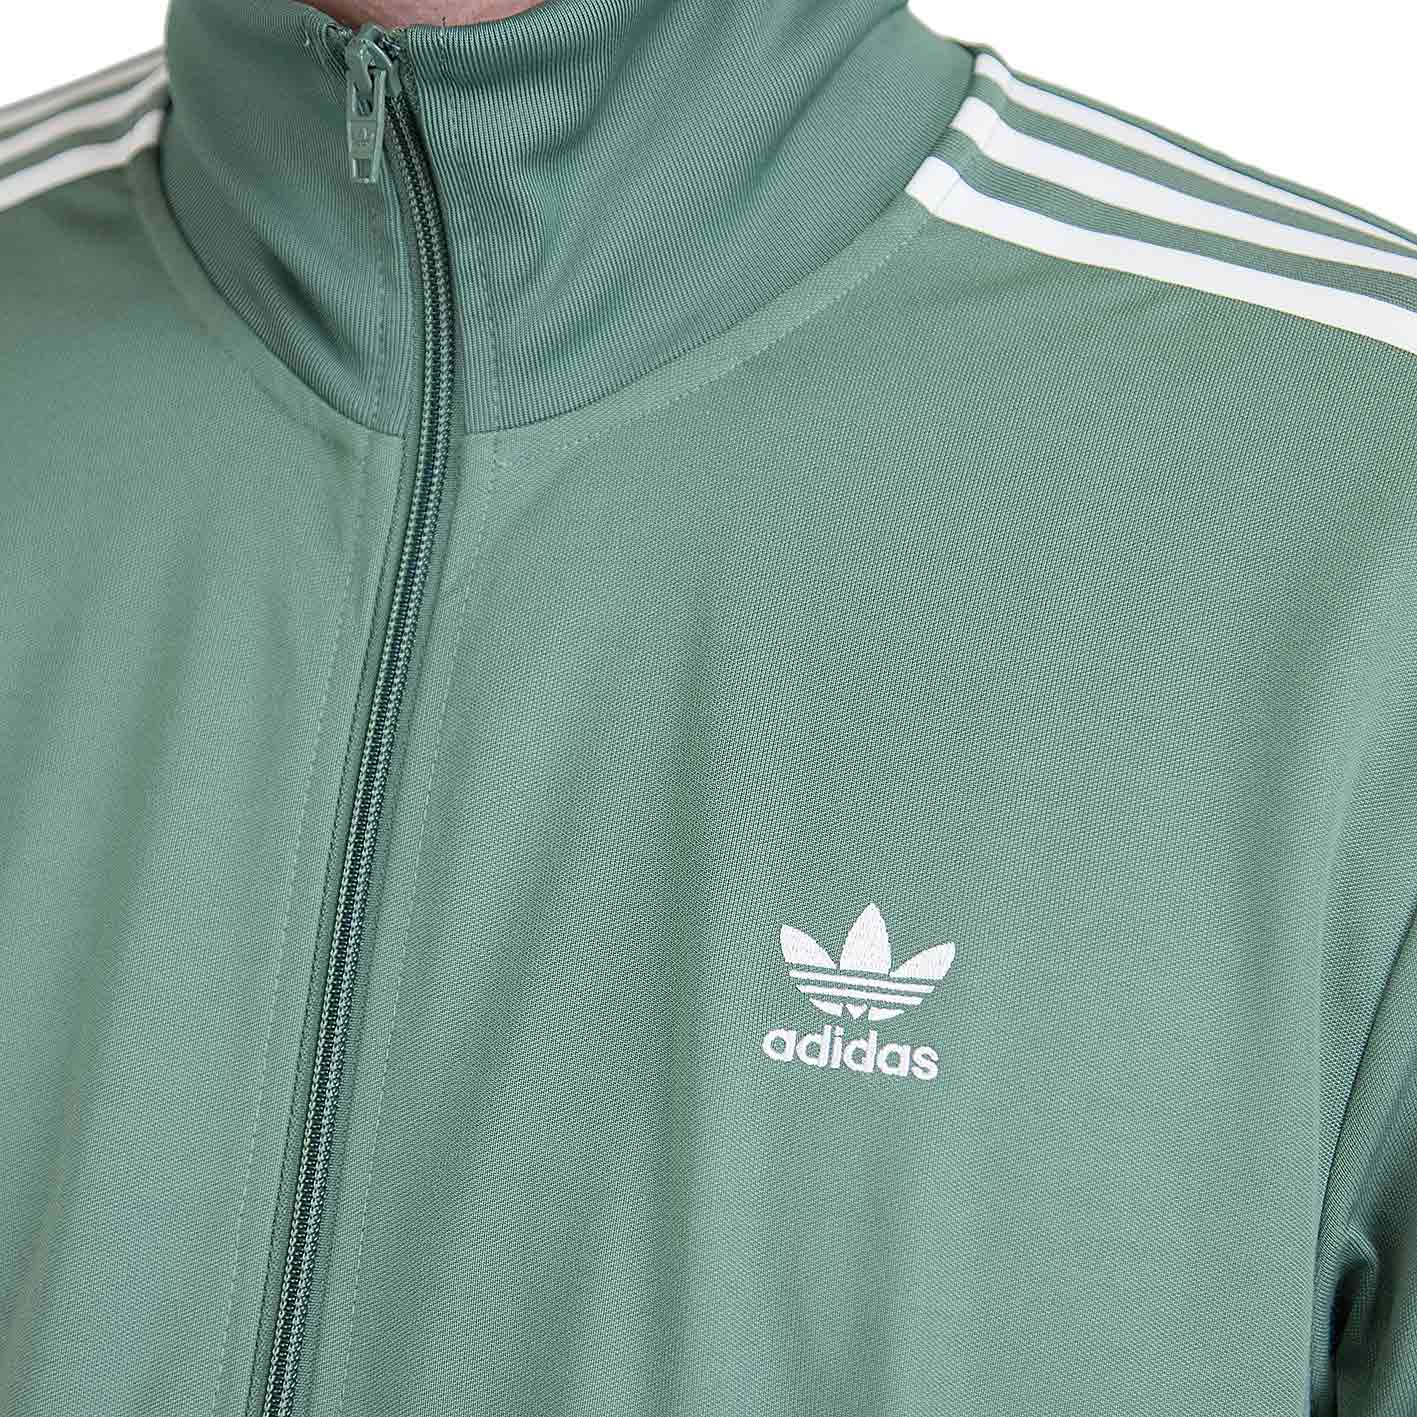 ☆ Adidas Originals Trainingsjacke Beckenbauer grün - hier bestellen!